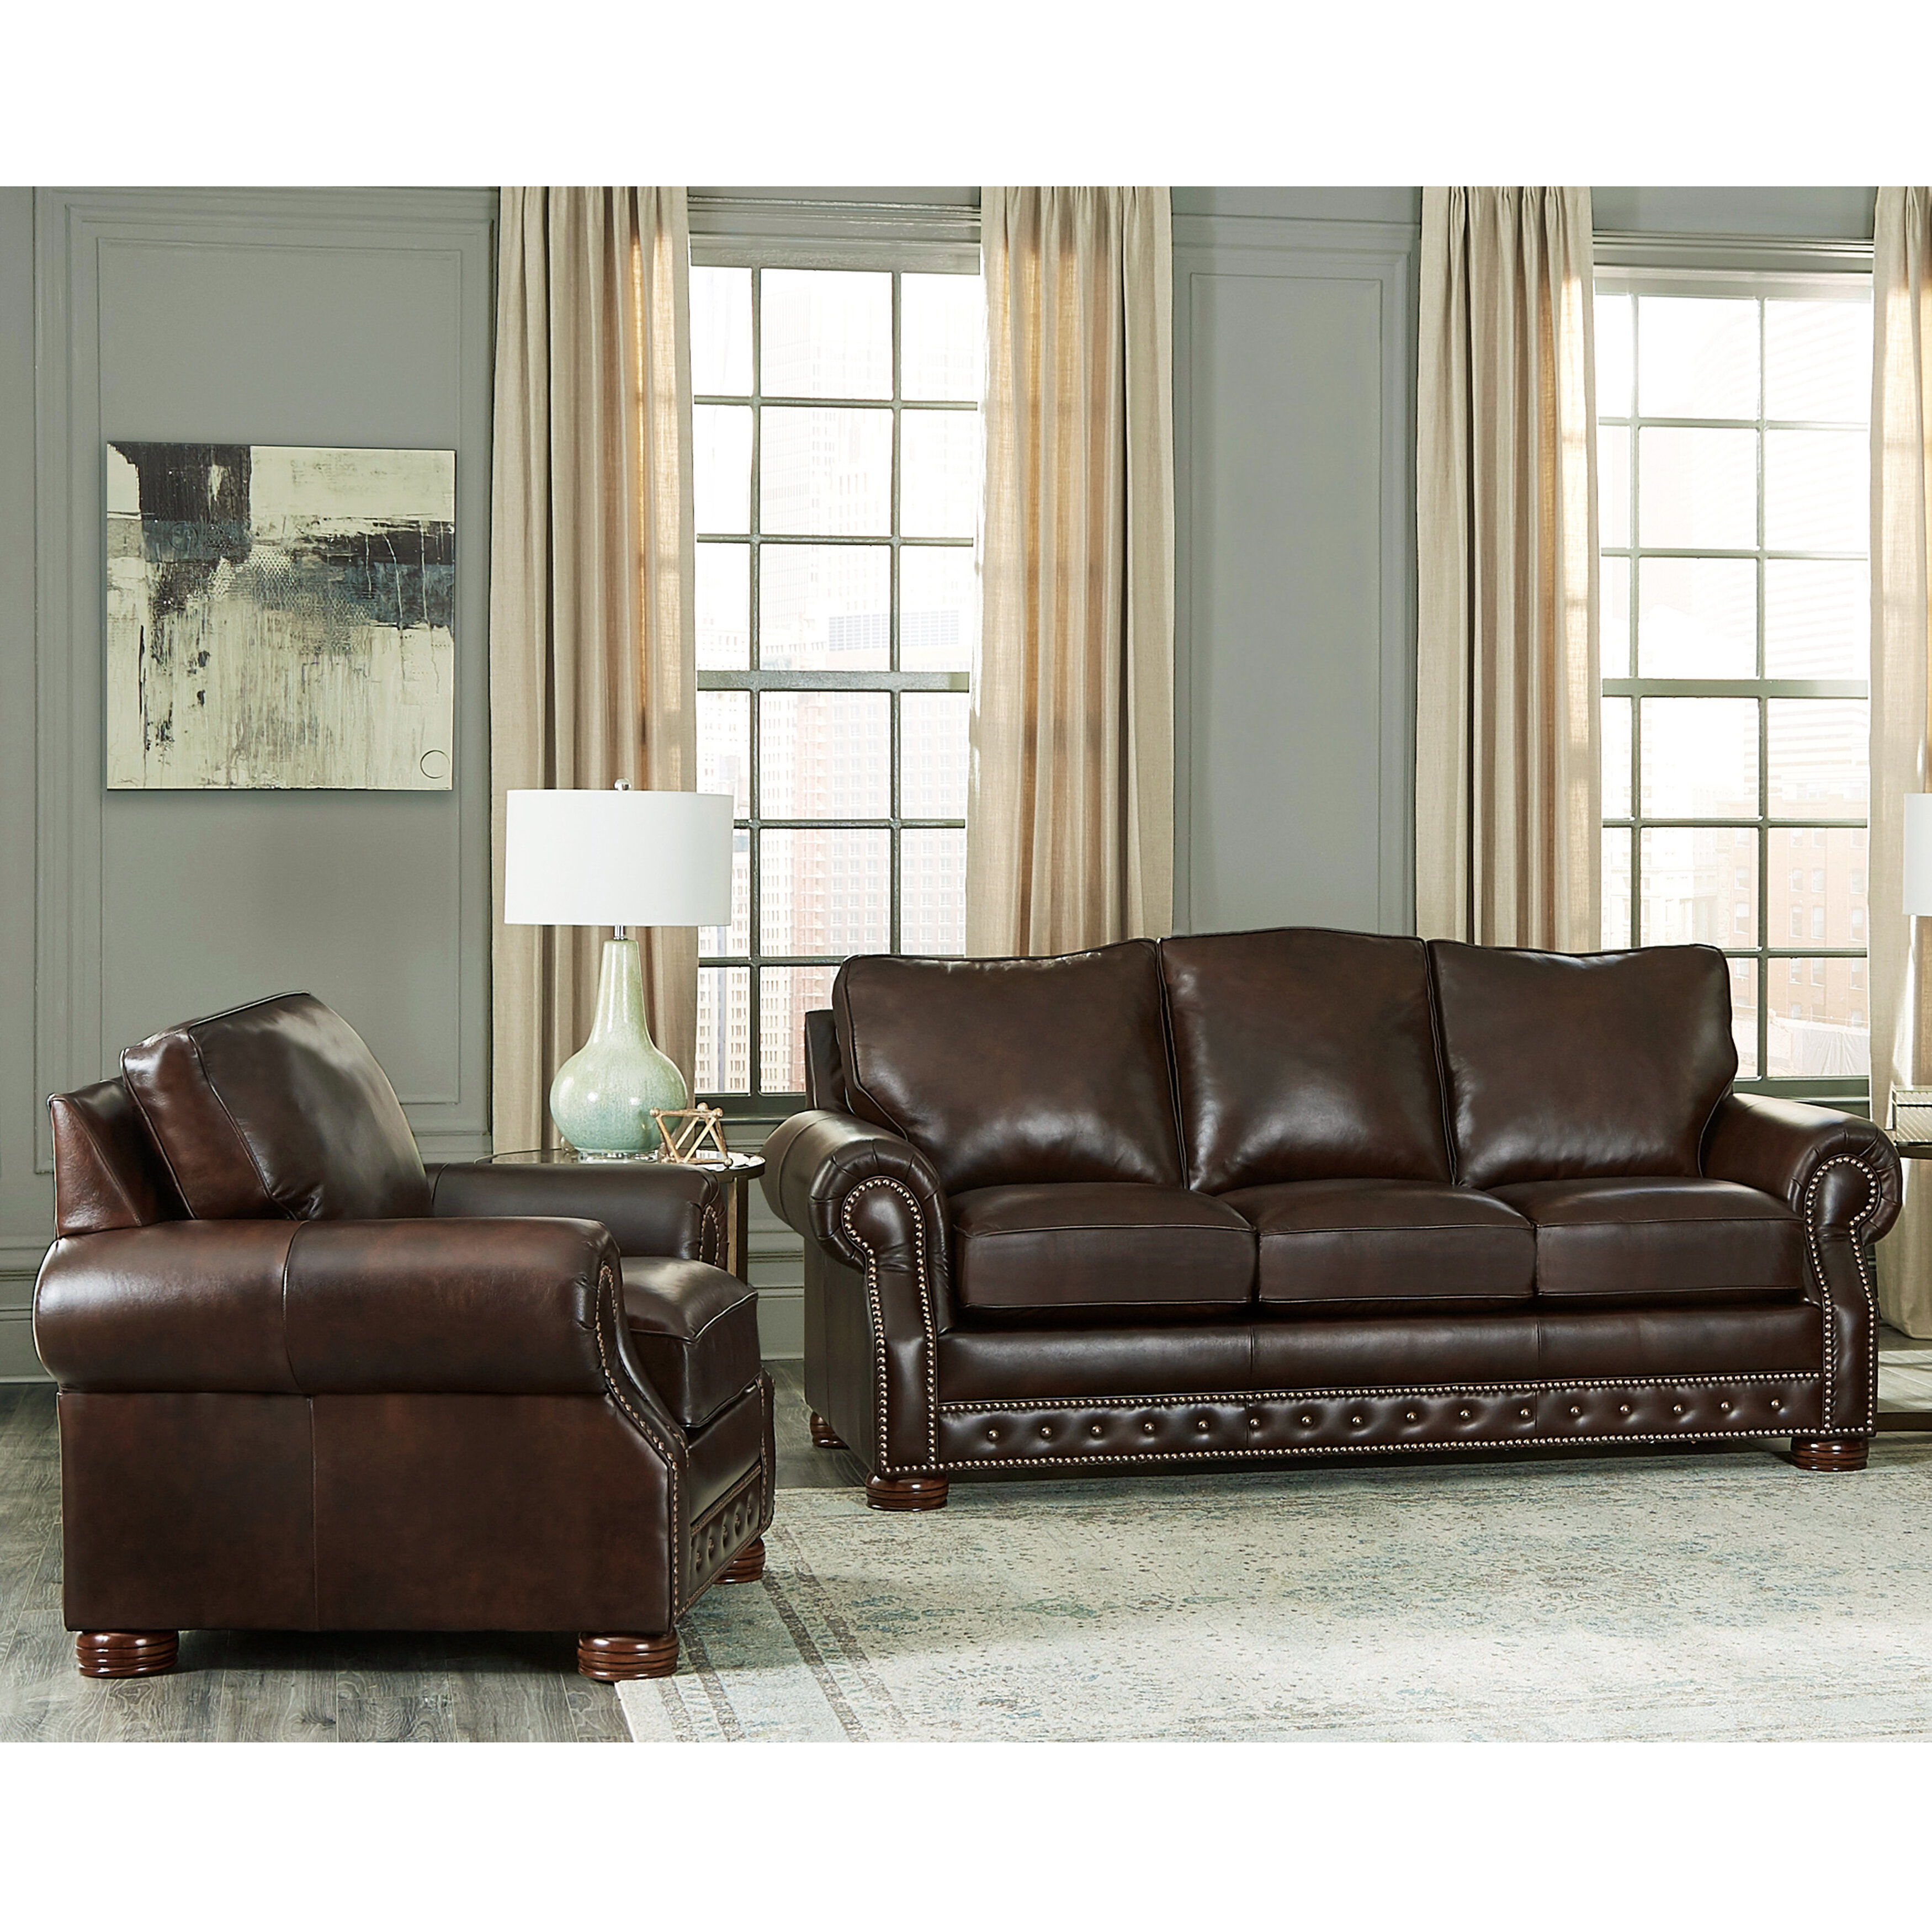 woensdag kwaadheid de vrije loop geven Weigering Canora Grey Pelaez 2 - Piece Leather Living Room Set | Wayfair